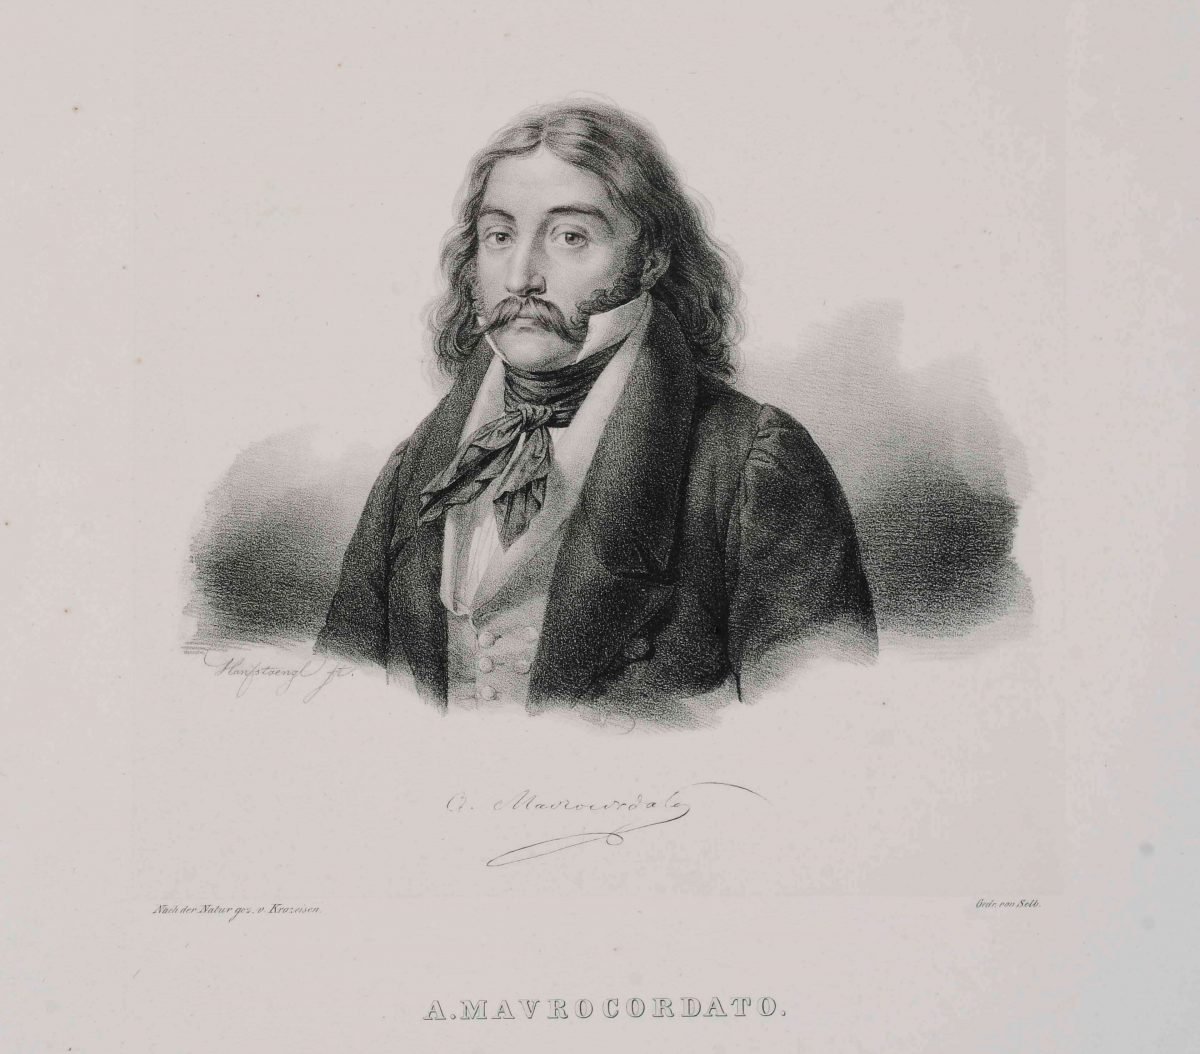 Αλέξανδρος Μαυροκορδάτος  (1791-1865) Λιθογραφία του  Karl Krazeisen  Πηγή: Εθνικό Ιστορικό Μουσείο, Αθήνα